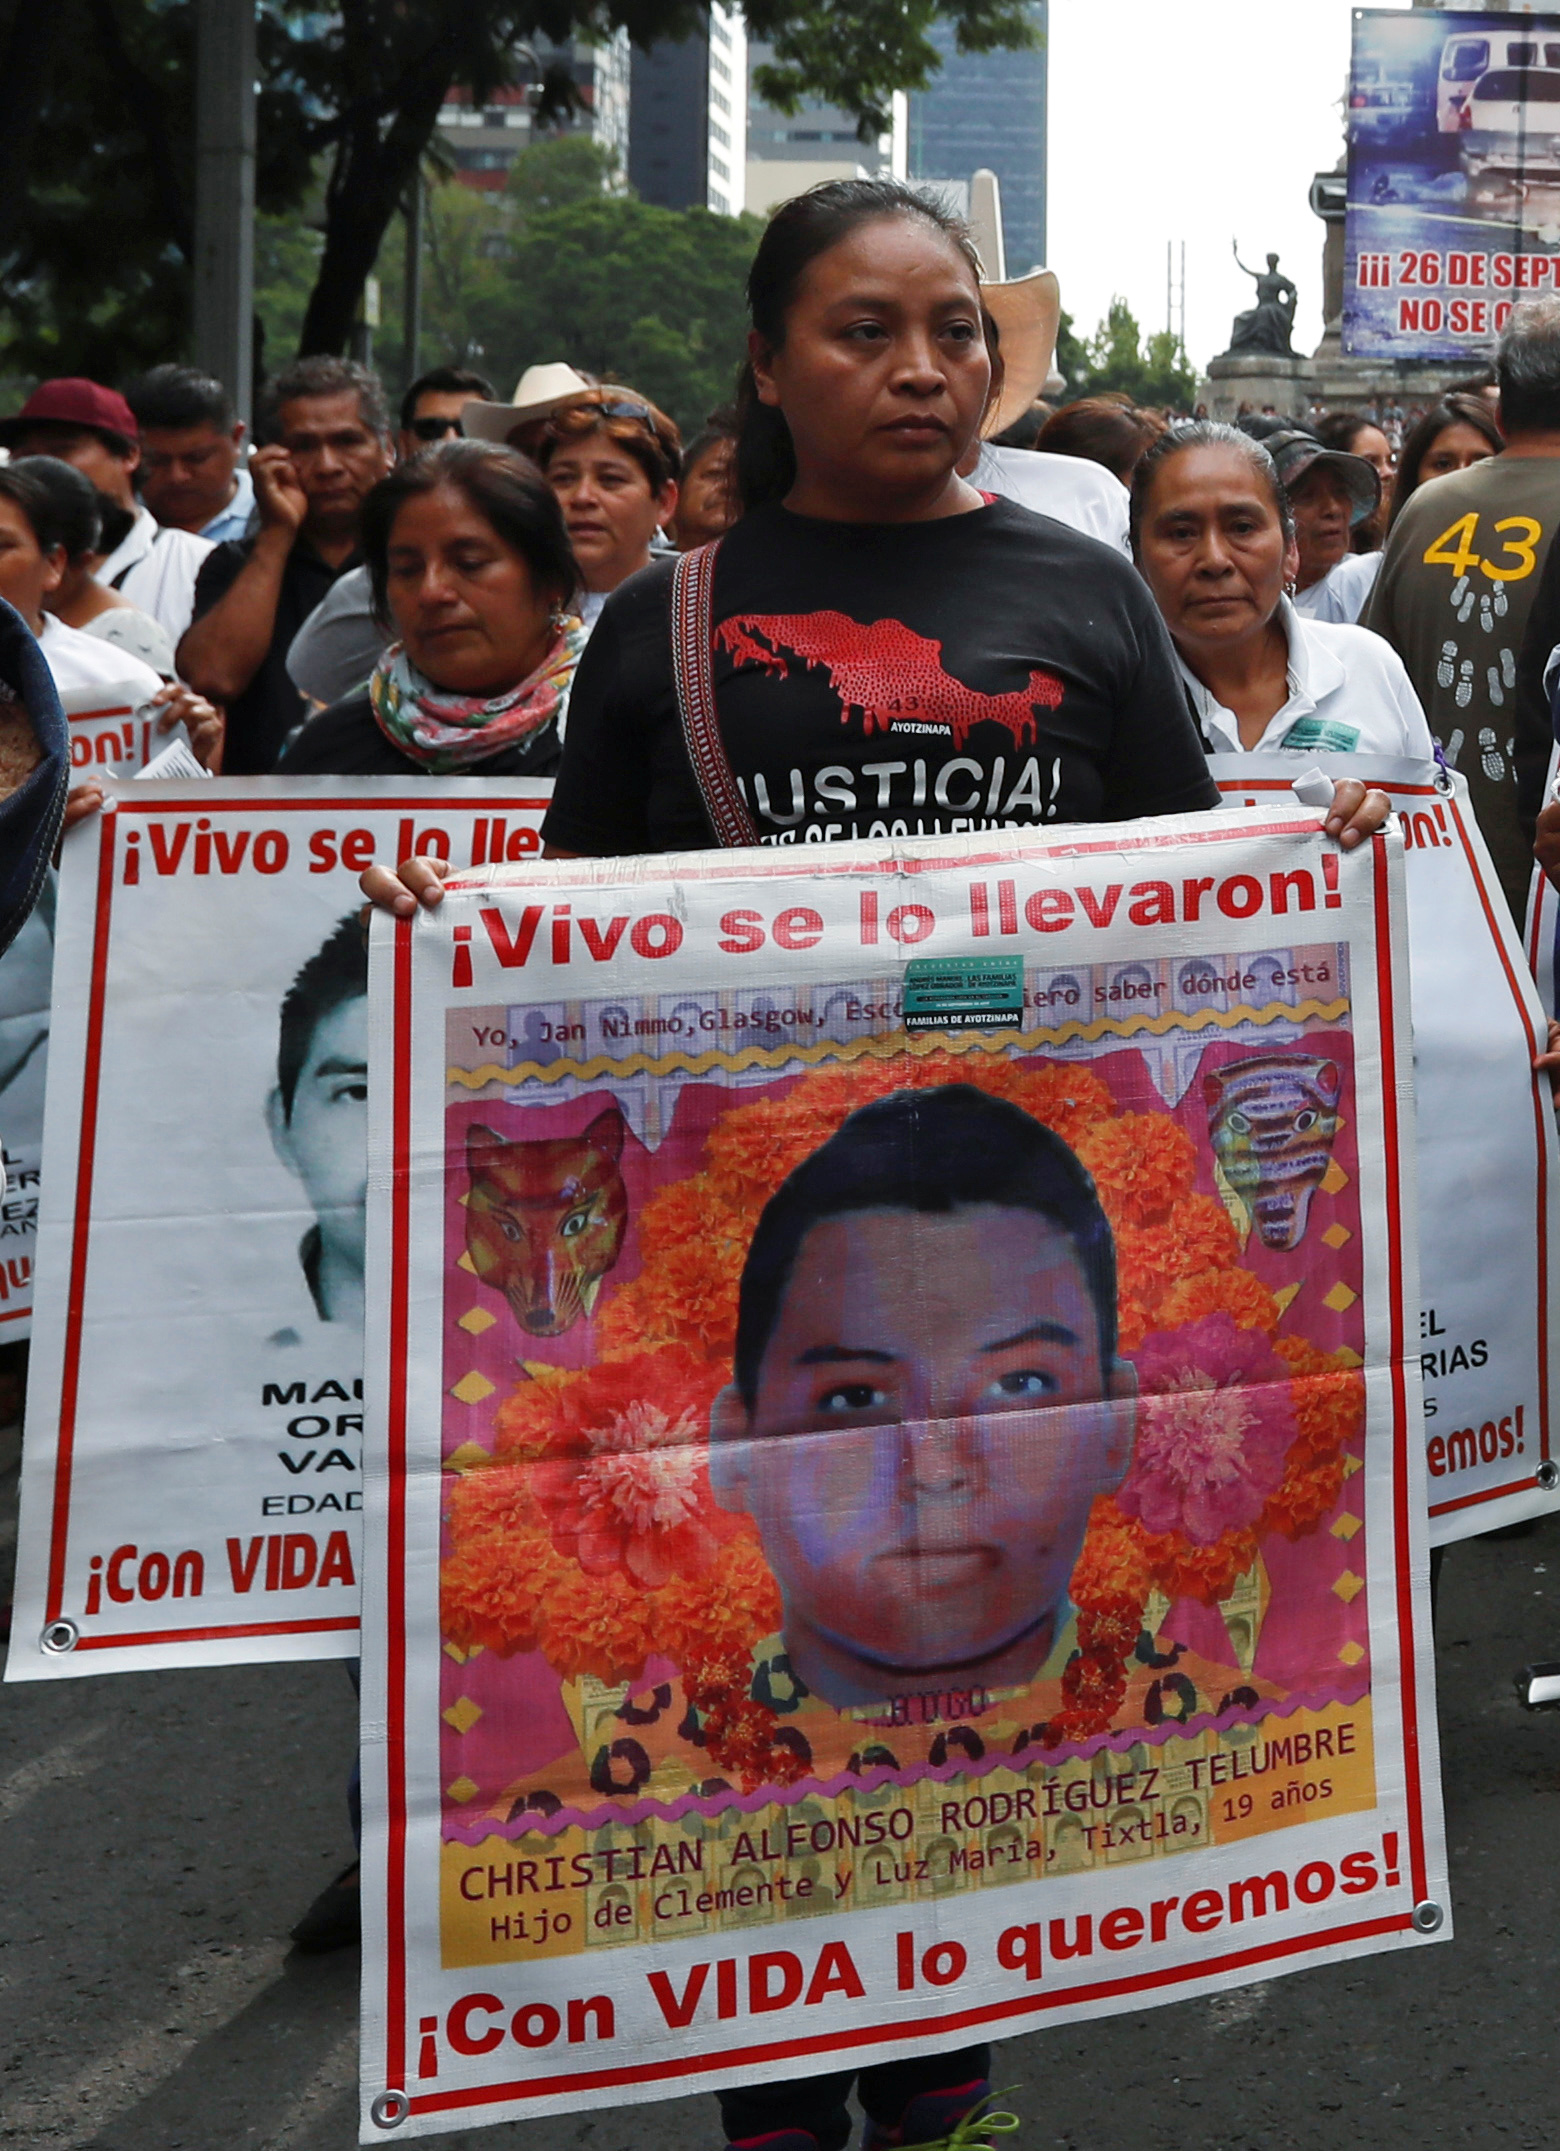 Los restos óseos de Christian Alfonso Rodriguez Telumbre fueron identificados. (Foto: Henry Romero/Reuters)